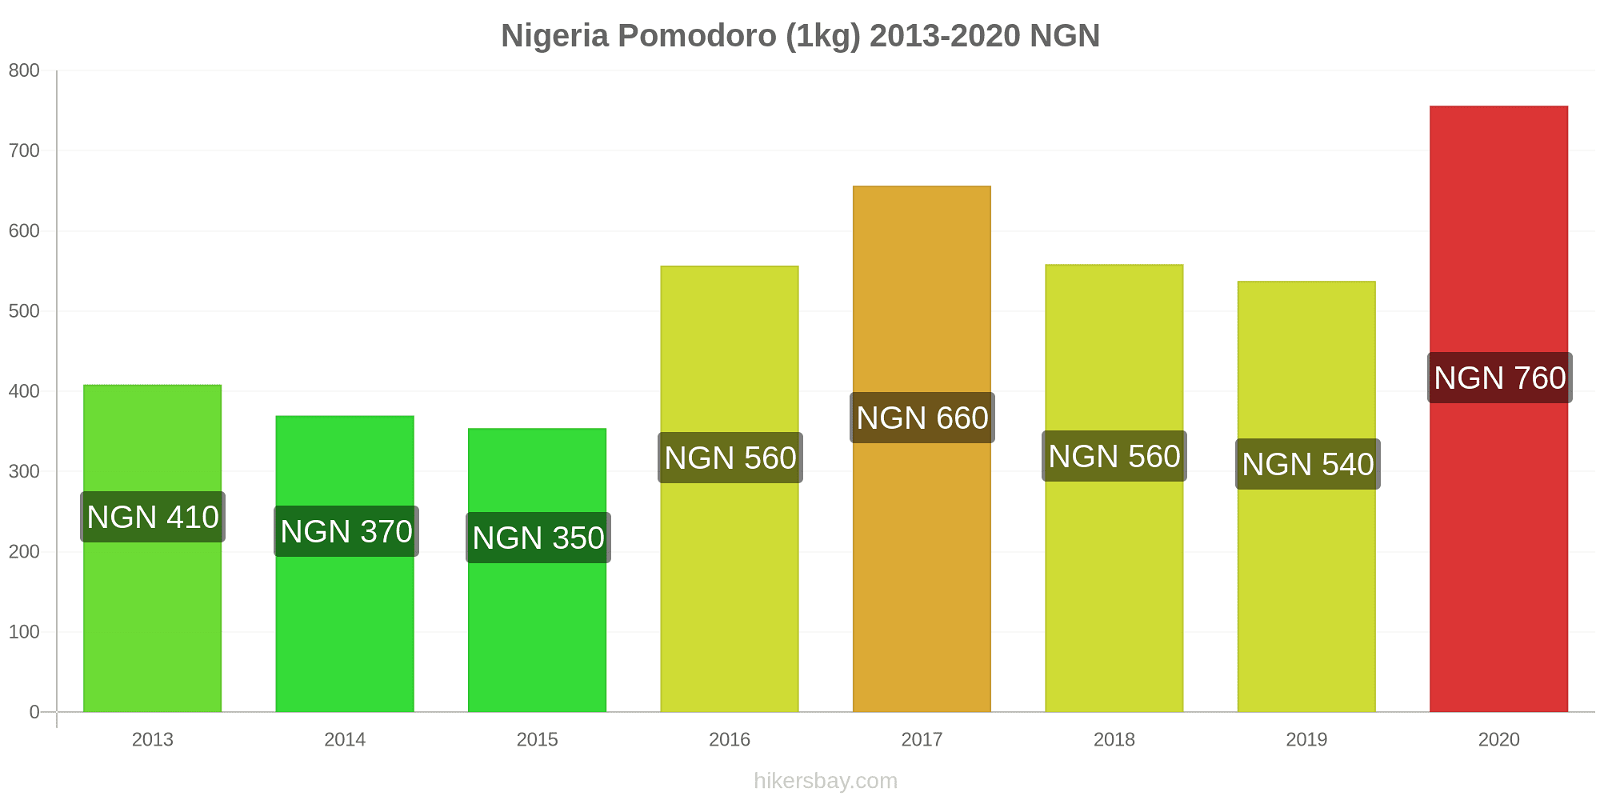 Nigeria variazioni di prezzo Pomodoro (1kg) hikersbay.com